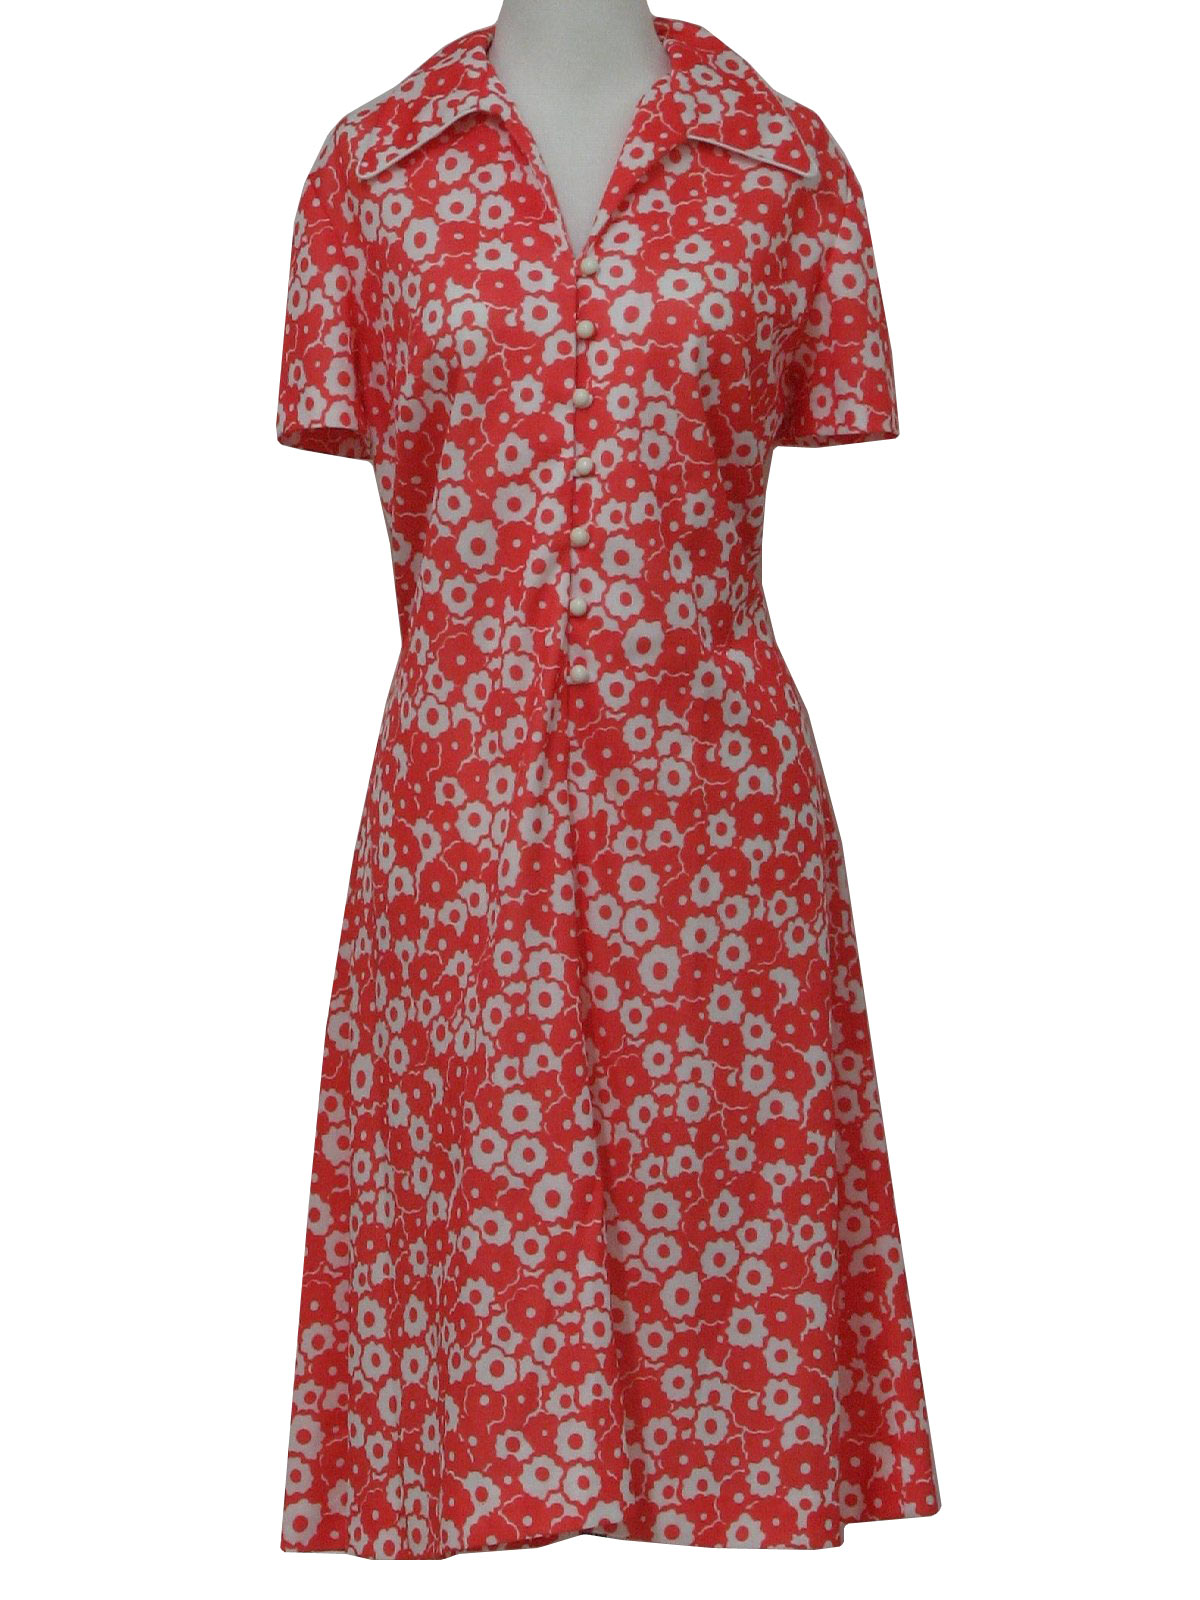 Retro 1970's Dress (Checkaberry) : 70s -Checkaberry- Womens coral and ...